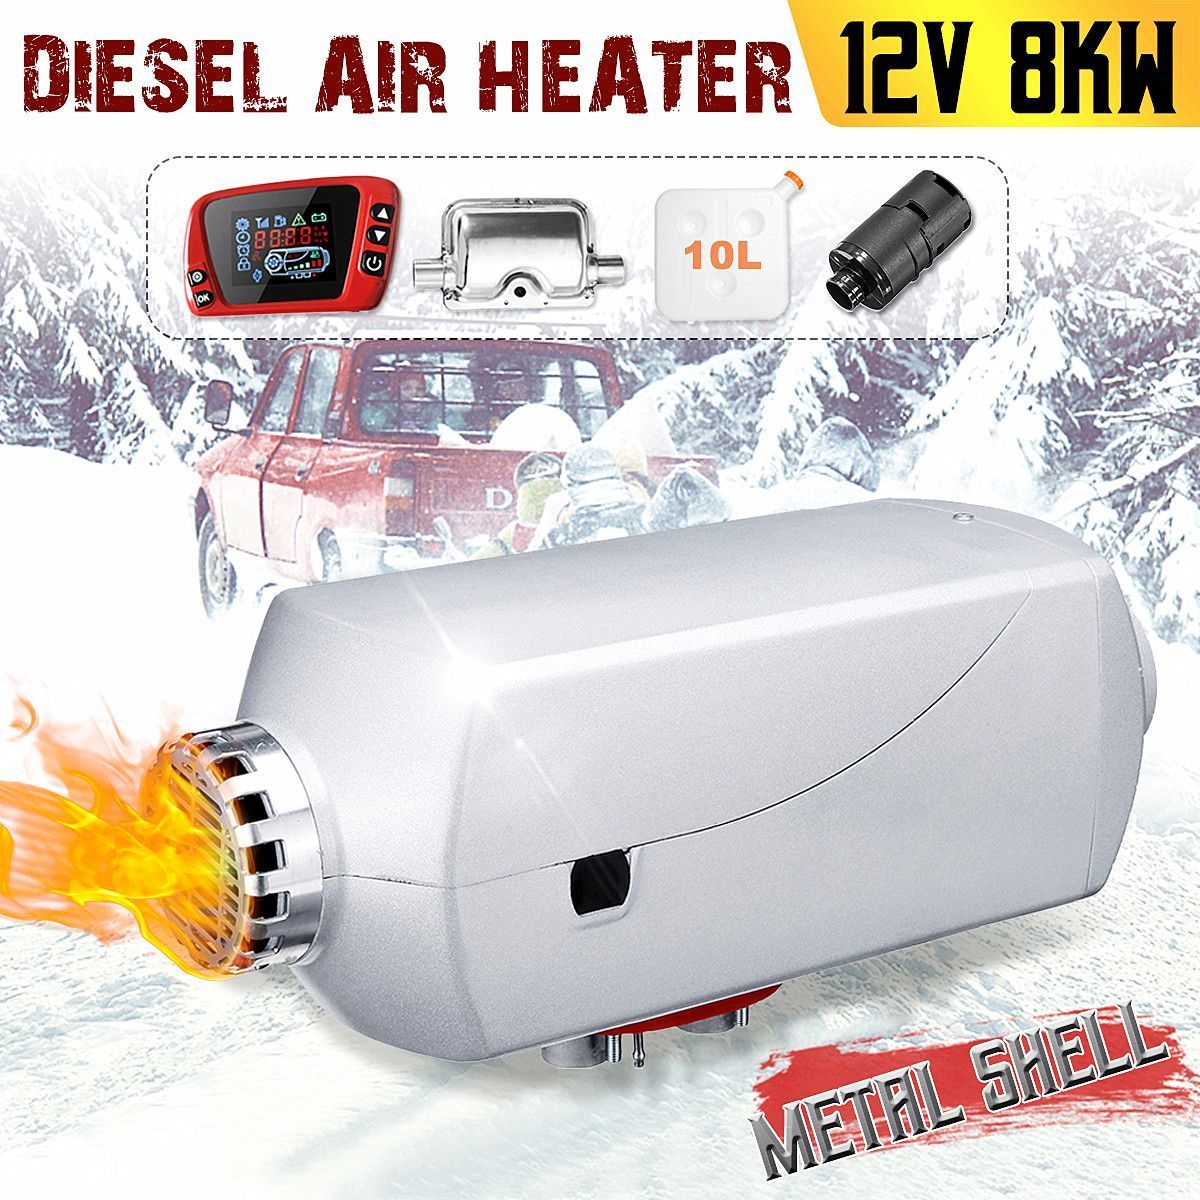 12V-8KW-10L-Tank-Low-Noise-Diesel-Car-Air-Heater-Digital-Display-Kit-1405763